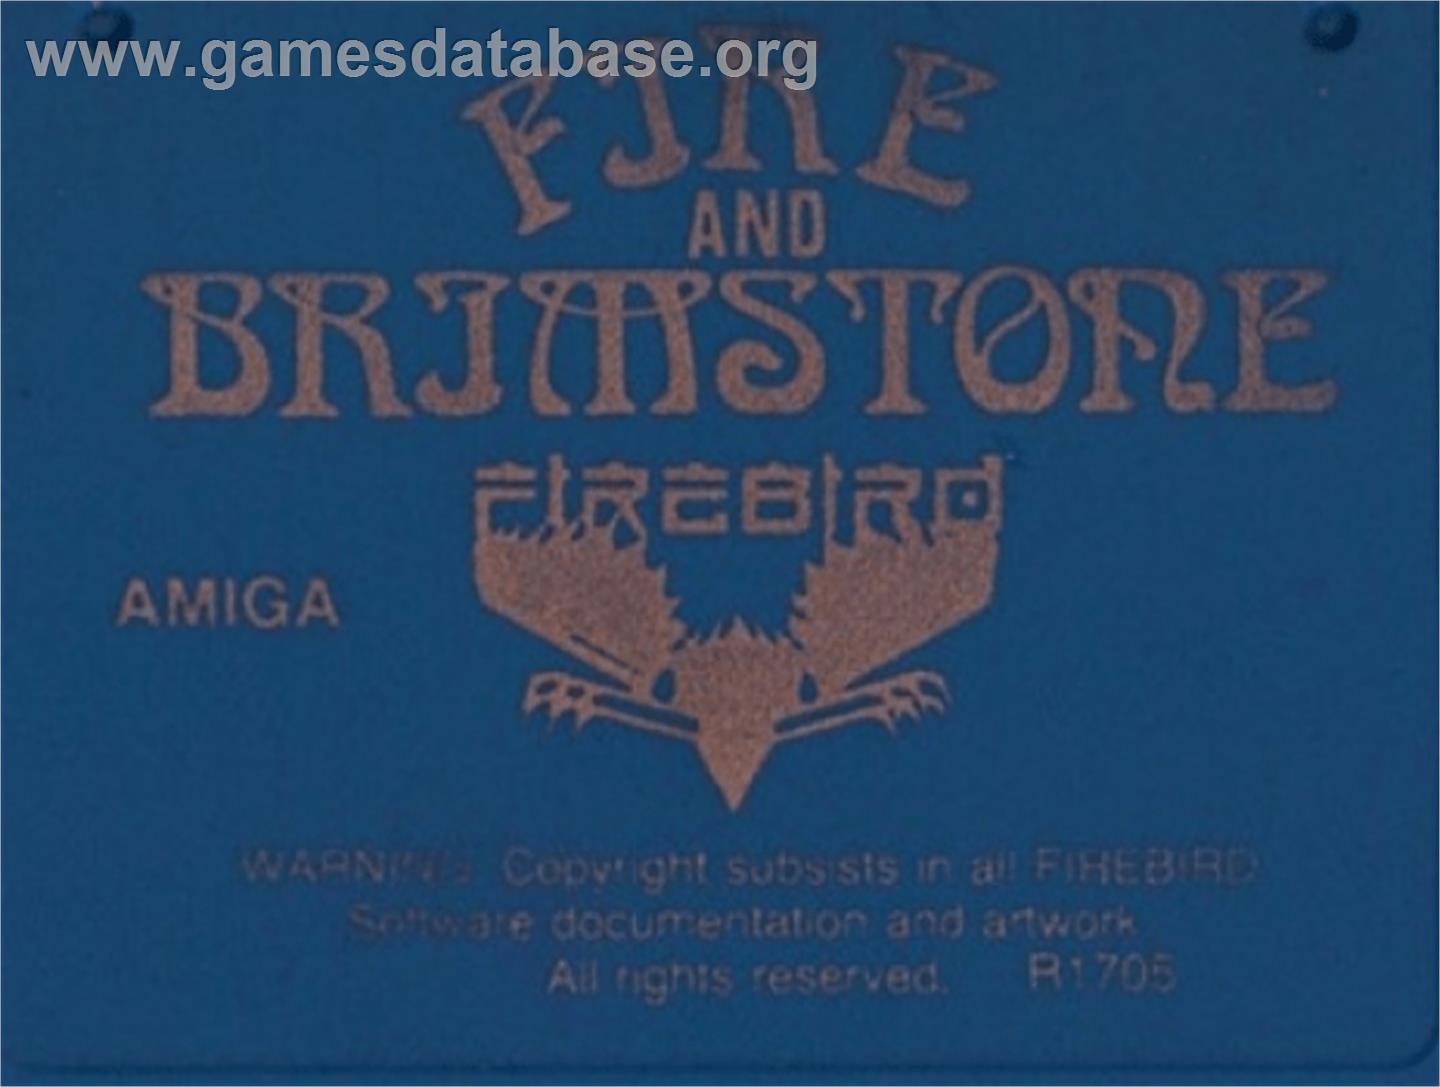 Fire and Brimstone - Commodore Amiga - Artwork - Cartridge Top